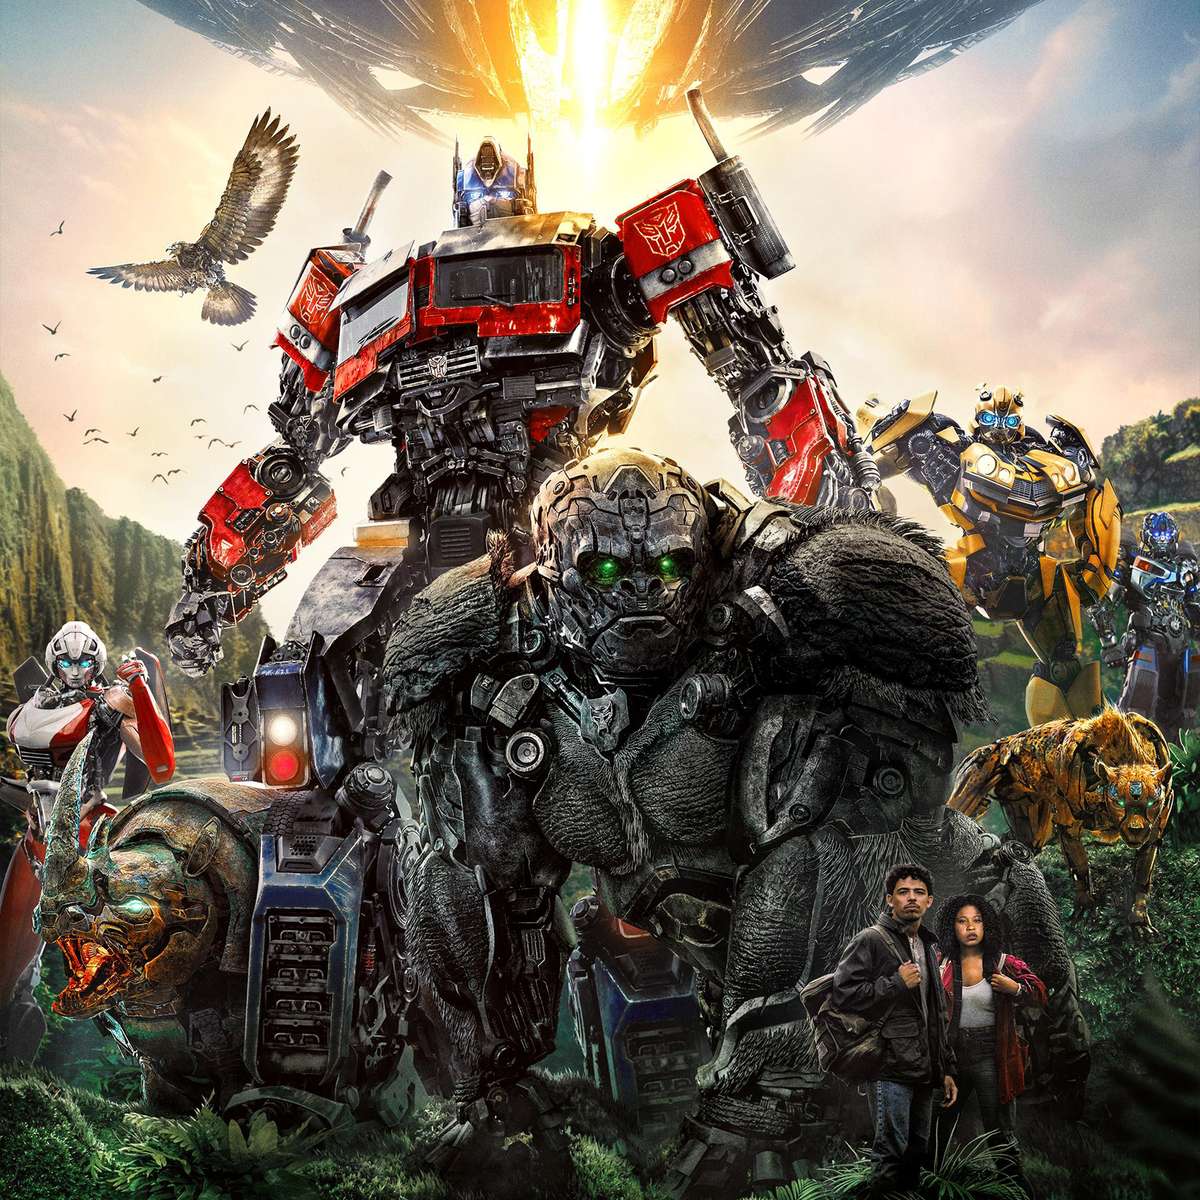 Transformers vencem Homem-Aranha nas bilheterias dos EUA